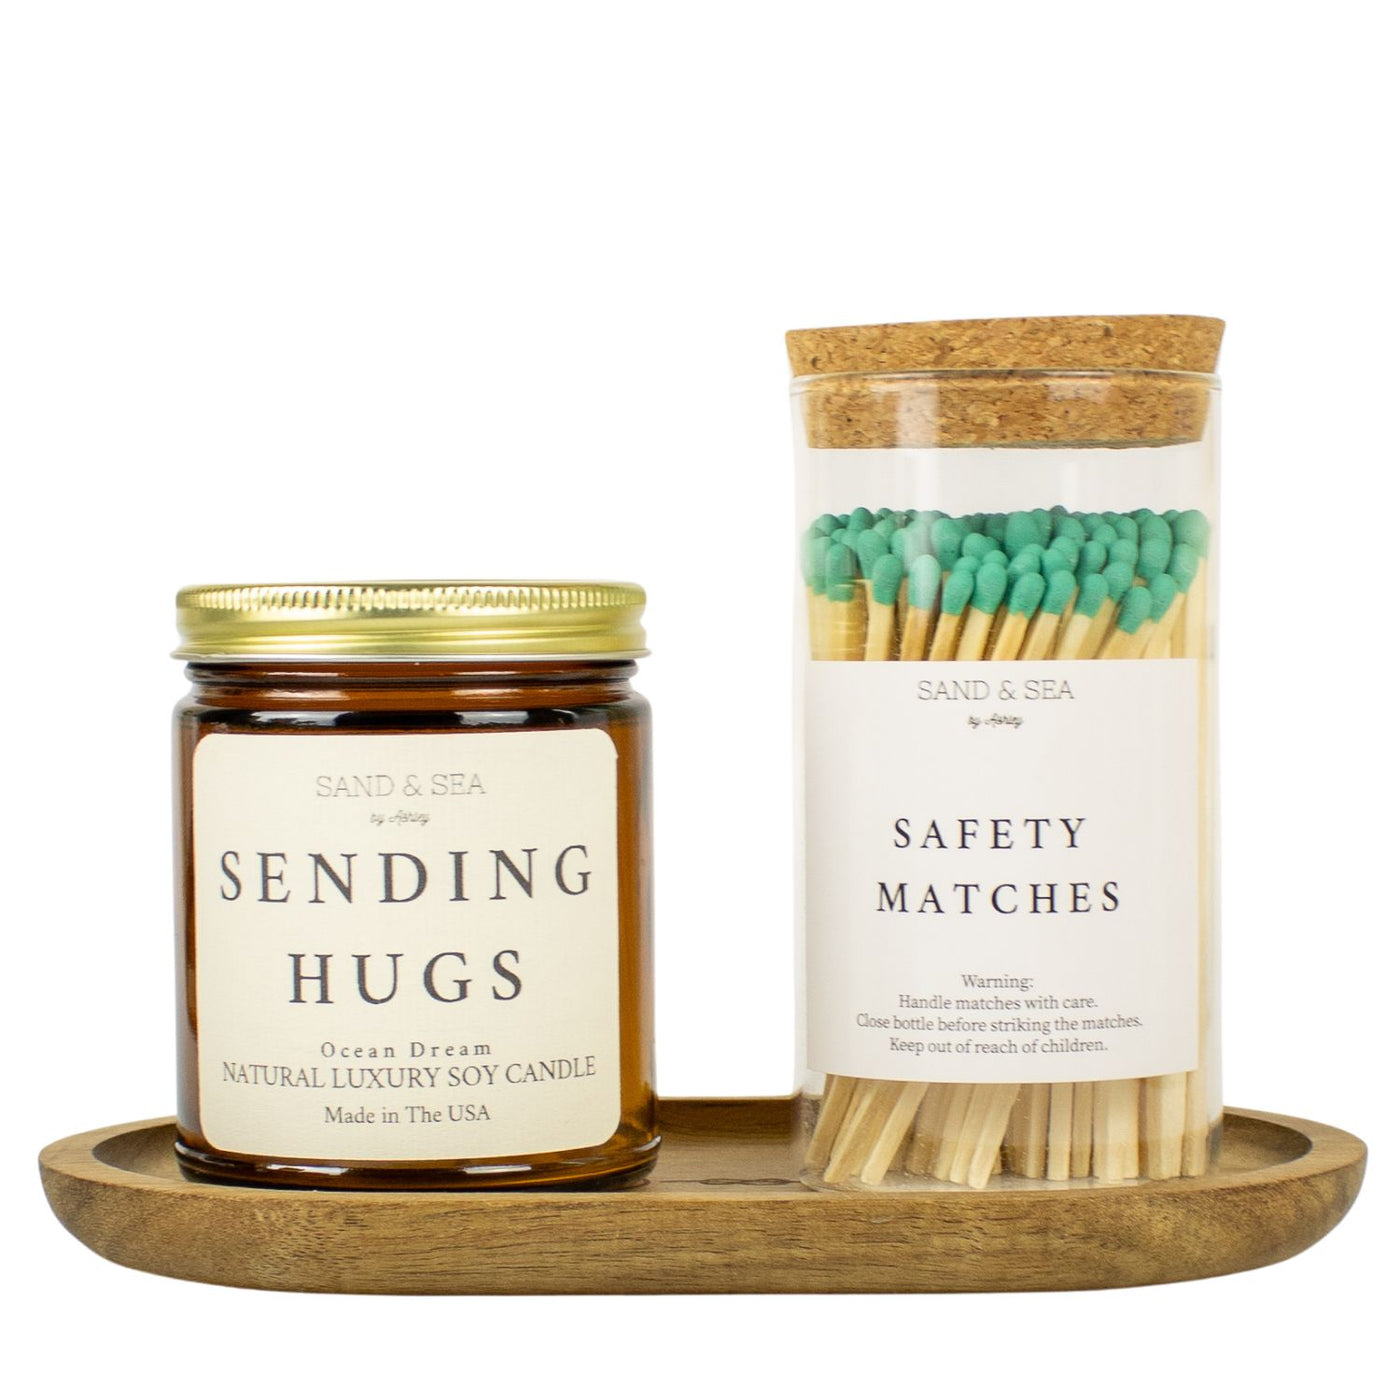 Sending Hugs Candle Gift Sets